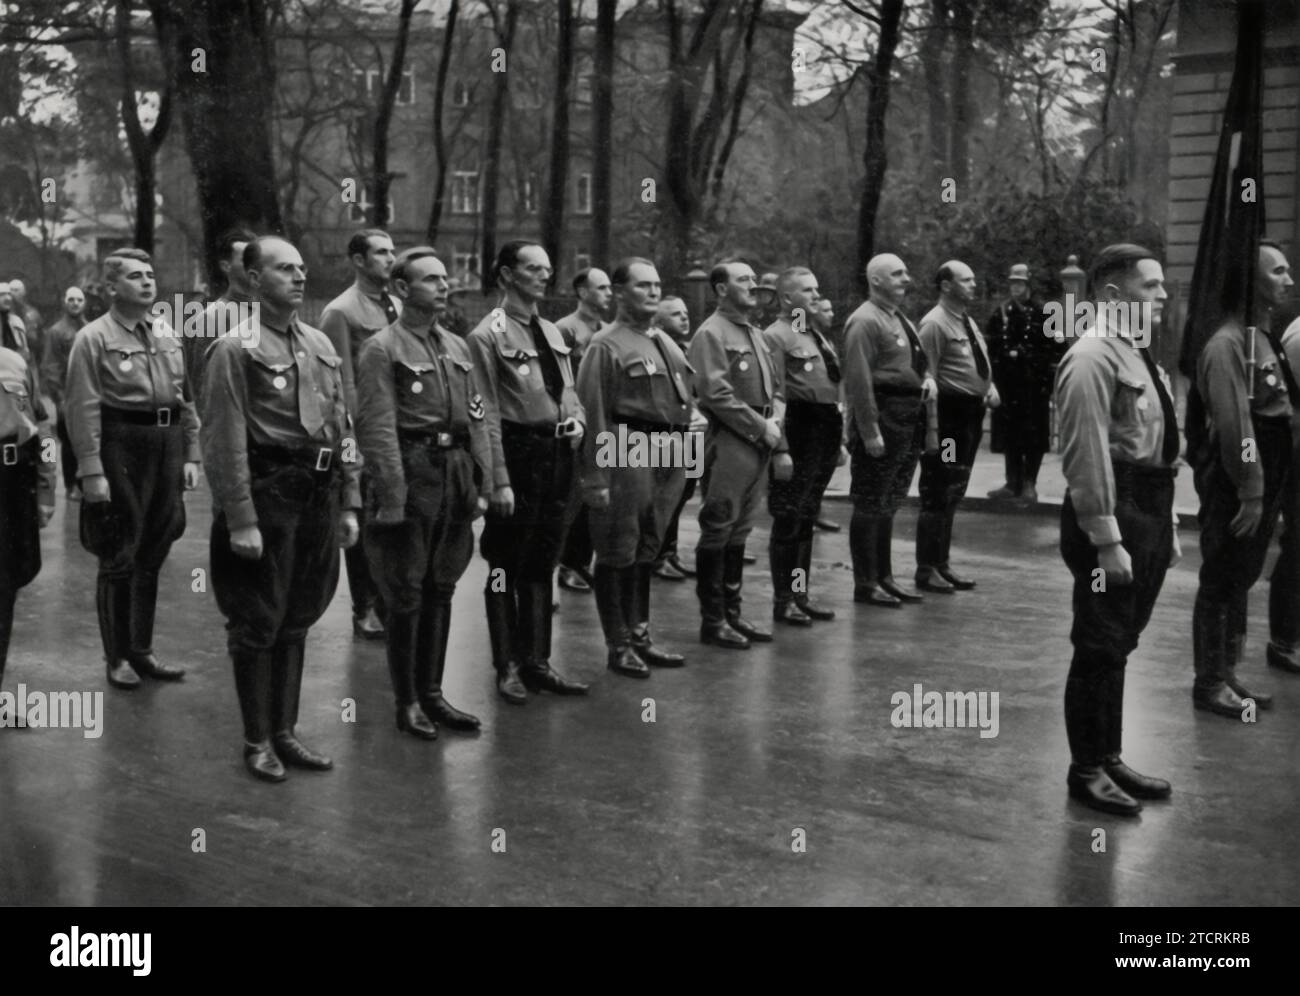 Am 9. November 1935 wird Adolf Hitler, begleitet von einigen der höchsten Offiziere der NSDAP, darunter Persönlichkeiten wie Hermann Göring und Erich Raeder, vor dem Braunen Haus in München mit den „Alten Kämpfern“ der Partei gesehen. Dieses Treffen im Parteihauptsitz zum Jahrestag der Bierhalle Putsch 1923 unterstreicht die Bedeutung der Loyalität und des Erinnerns an die frühen Kämpfe der Partei und unterstreicht die Anwesenheit der wichtigsten Führer, die das Nazi-Regime geformt haben. Stockfoto